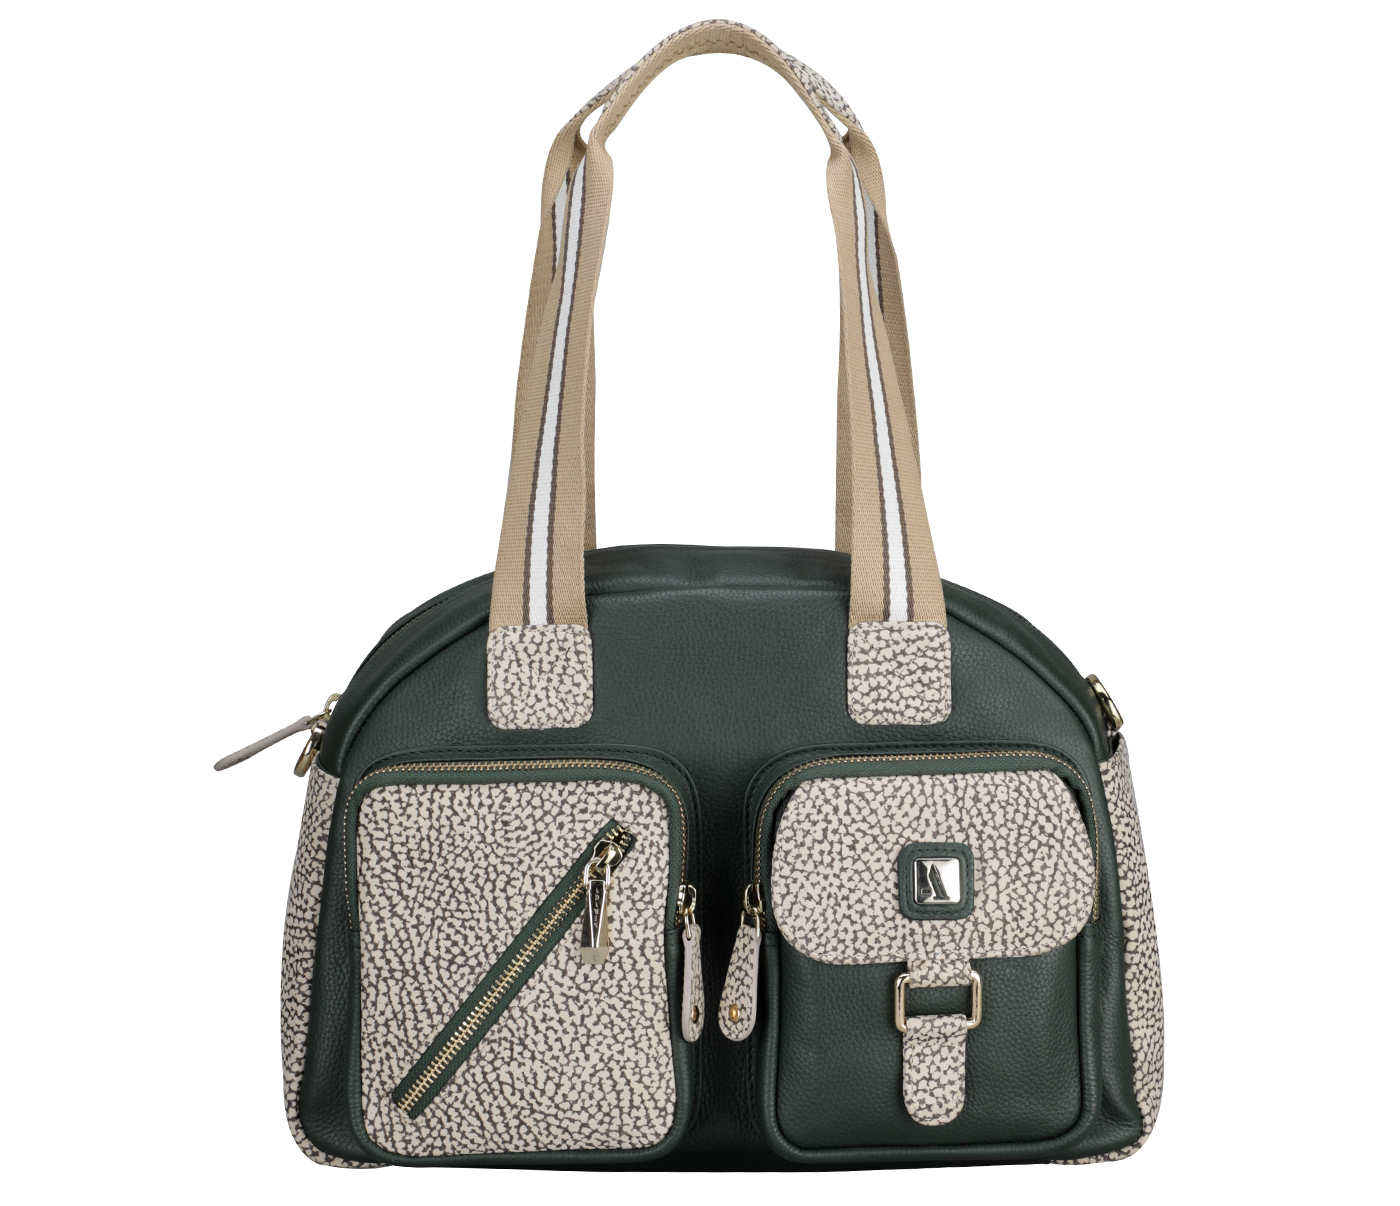 Jacinta Soft Tote Bag Leather Handbag(Green)B913